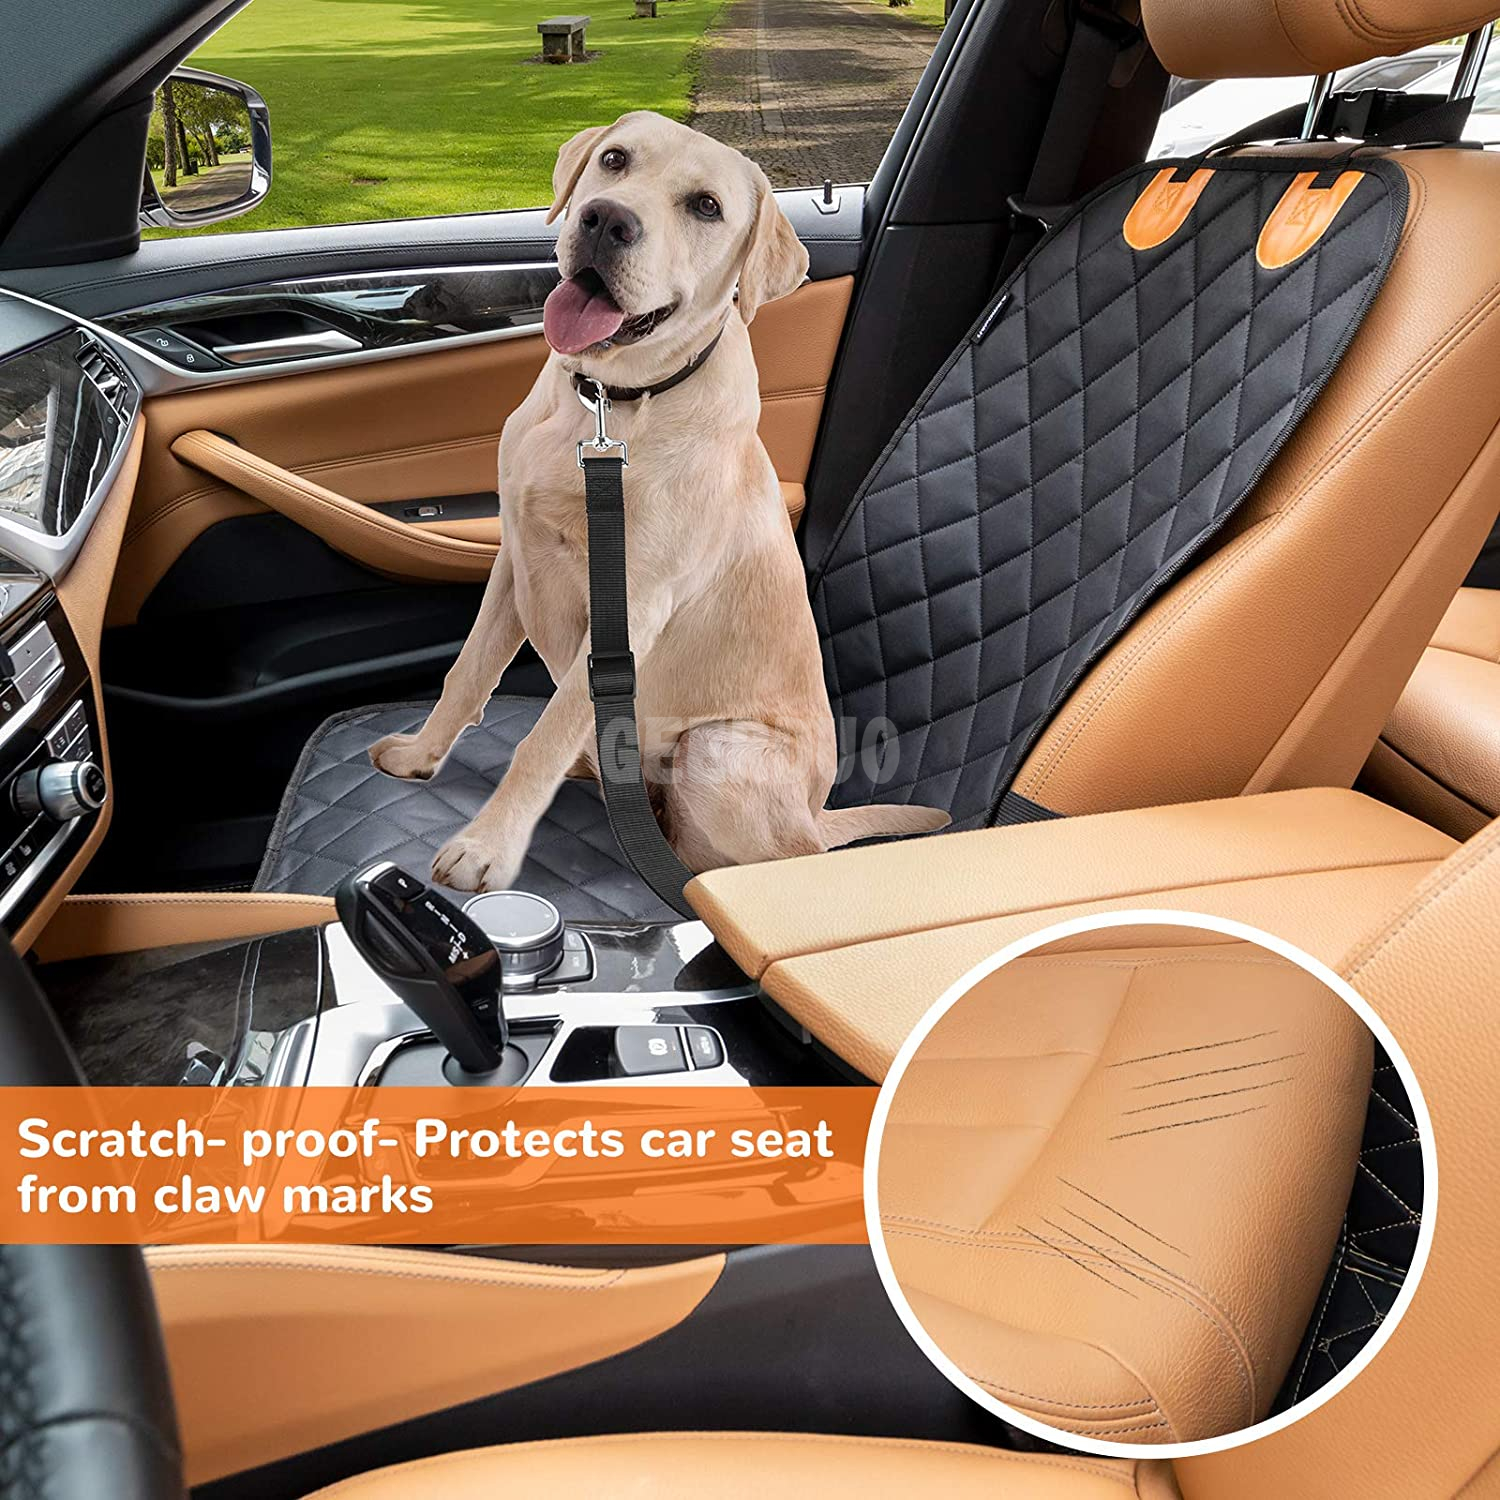  Protector de asiento de coche antideslizante para mascotas, funda de asiento delantero para perros para coches GRDSF-8